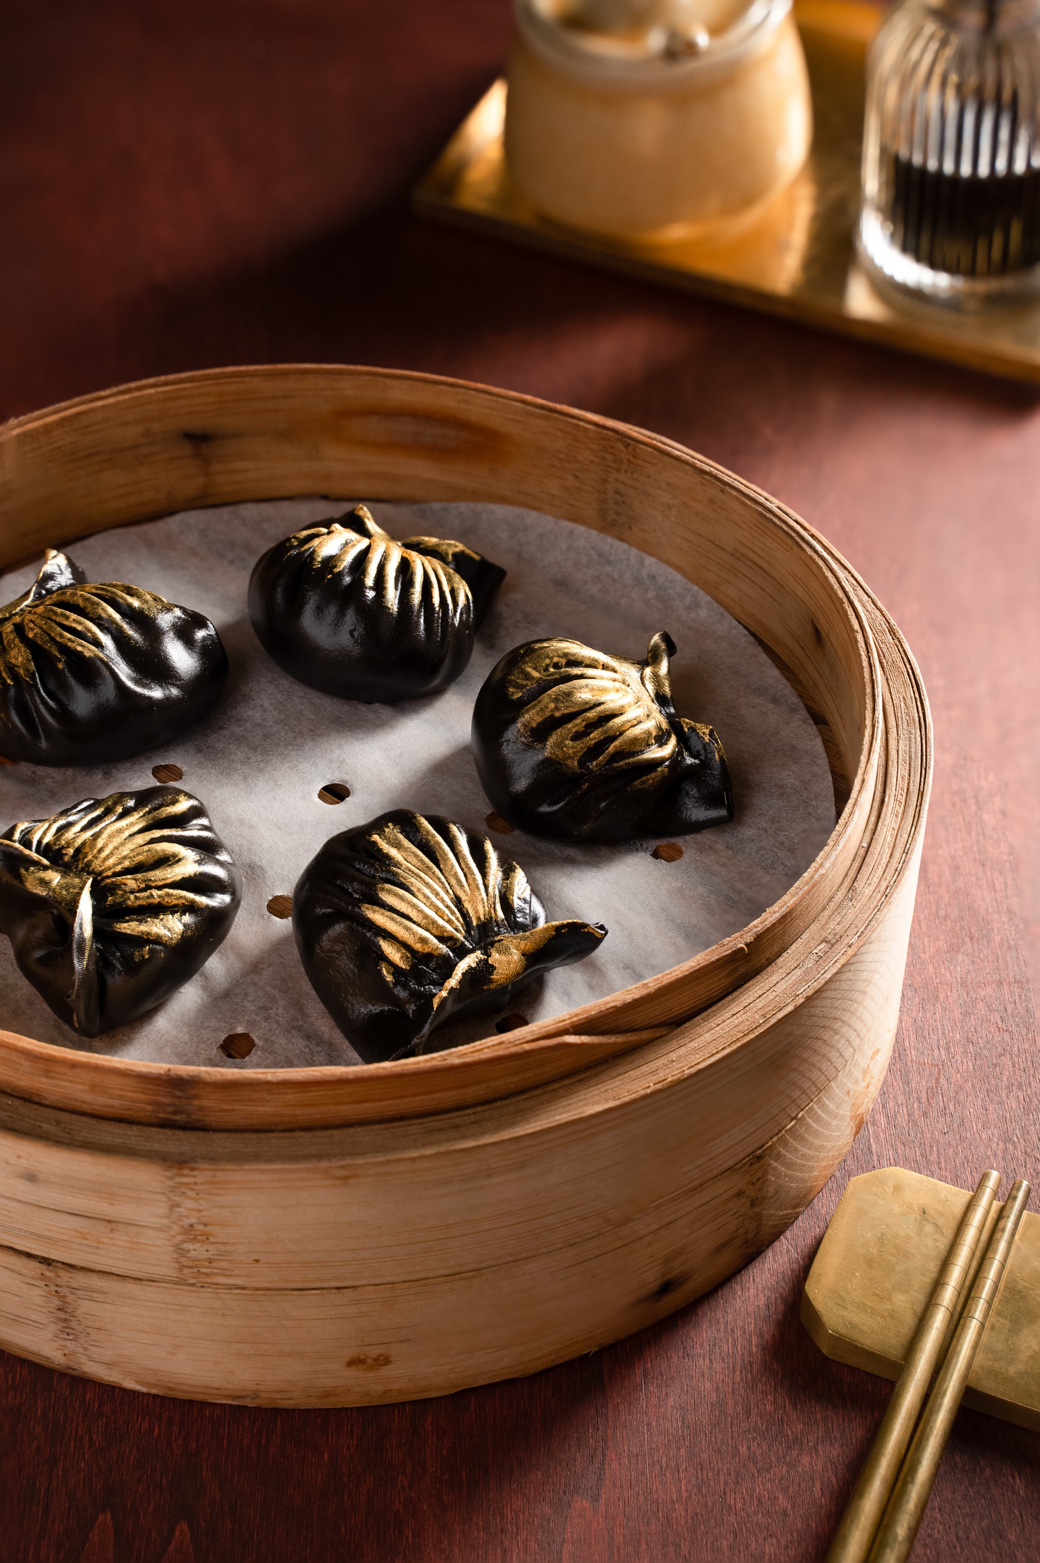 Khai trương nhà hàng Black Vinegar mang phong cách ẩm thực Trung Hoa mới lạ - Ảnh 3.